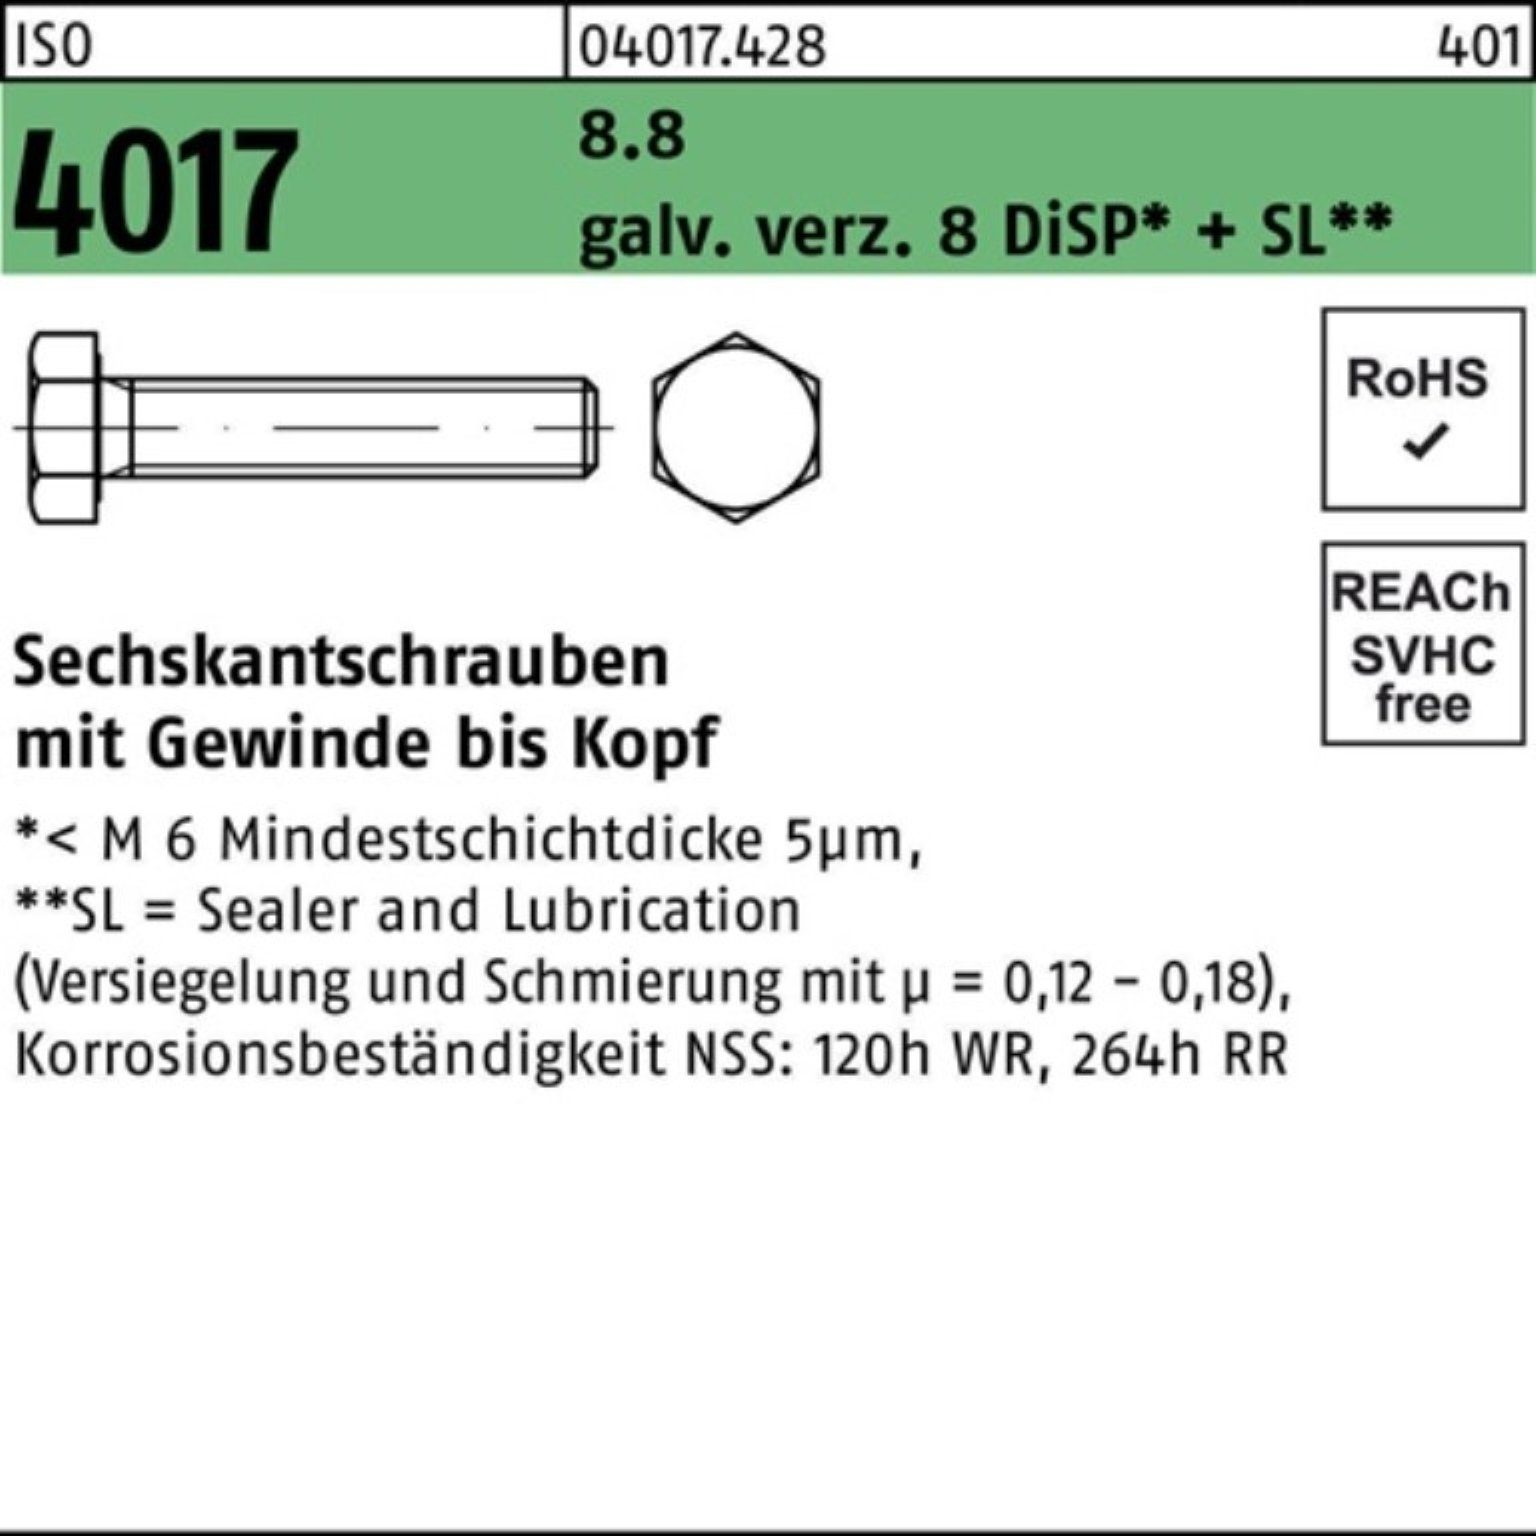 Pack Sechskantschraube VG 8 Bufab ISO 8.8 Sechskantschraube 4017 200er 14 galv.verz. M8x DiSP+